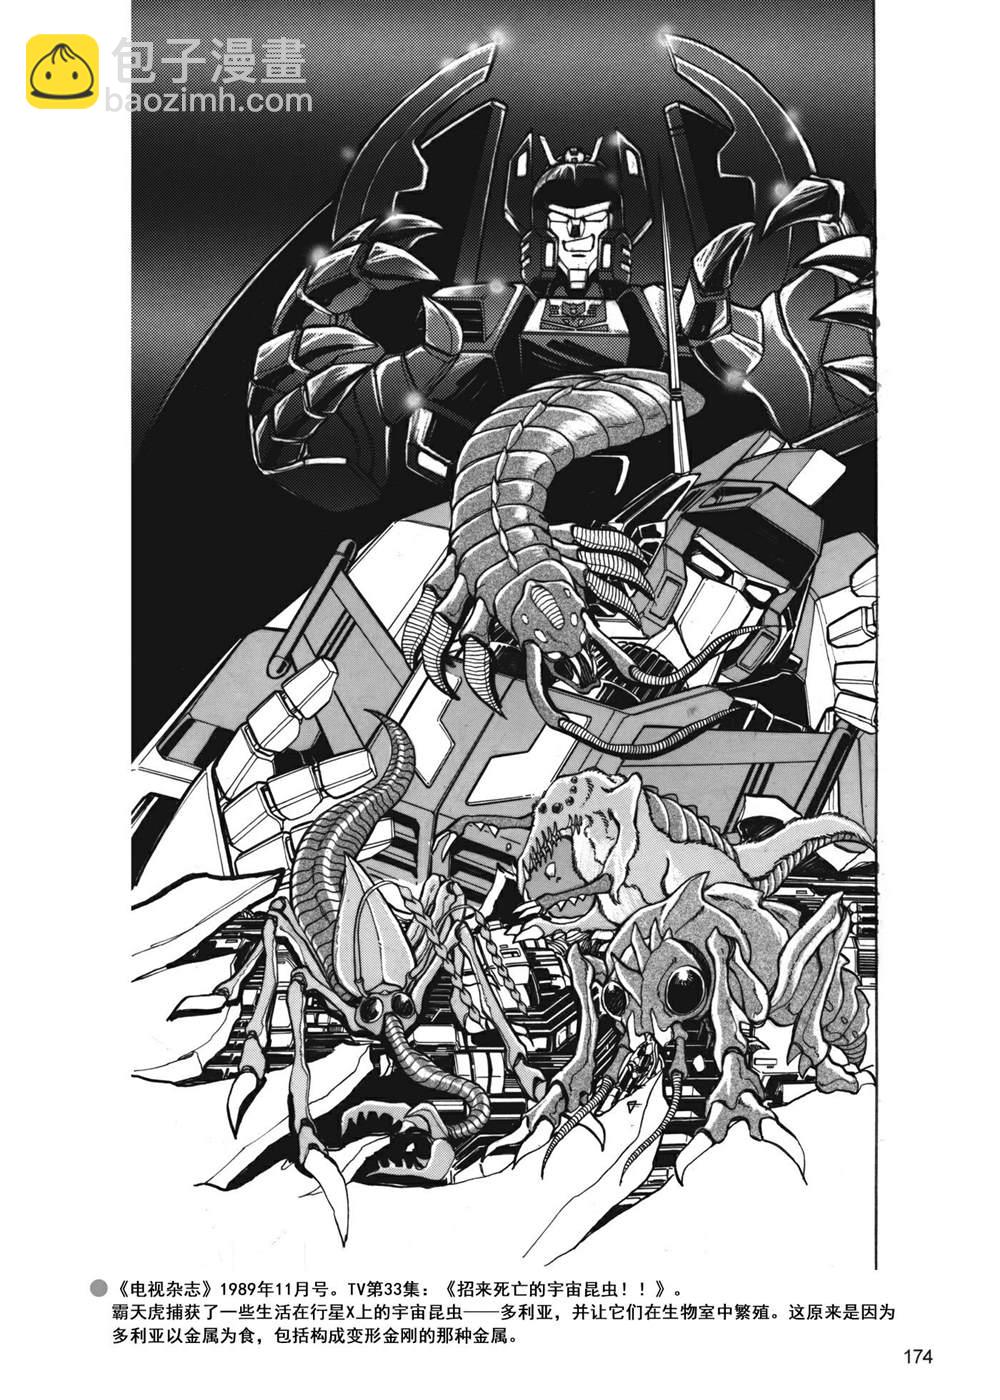 變形金剛日版G1雜誌插畫 - 戰鬥吧！超機械生命體變形金剛：勝利之鬥爭 - 7